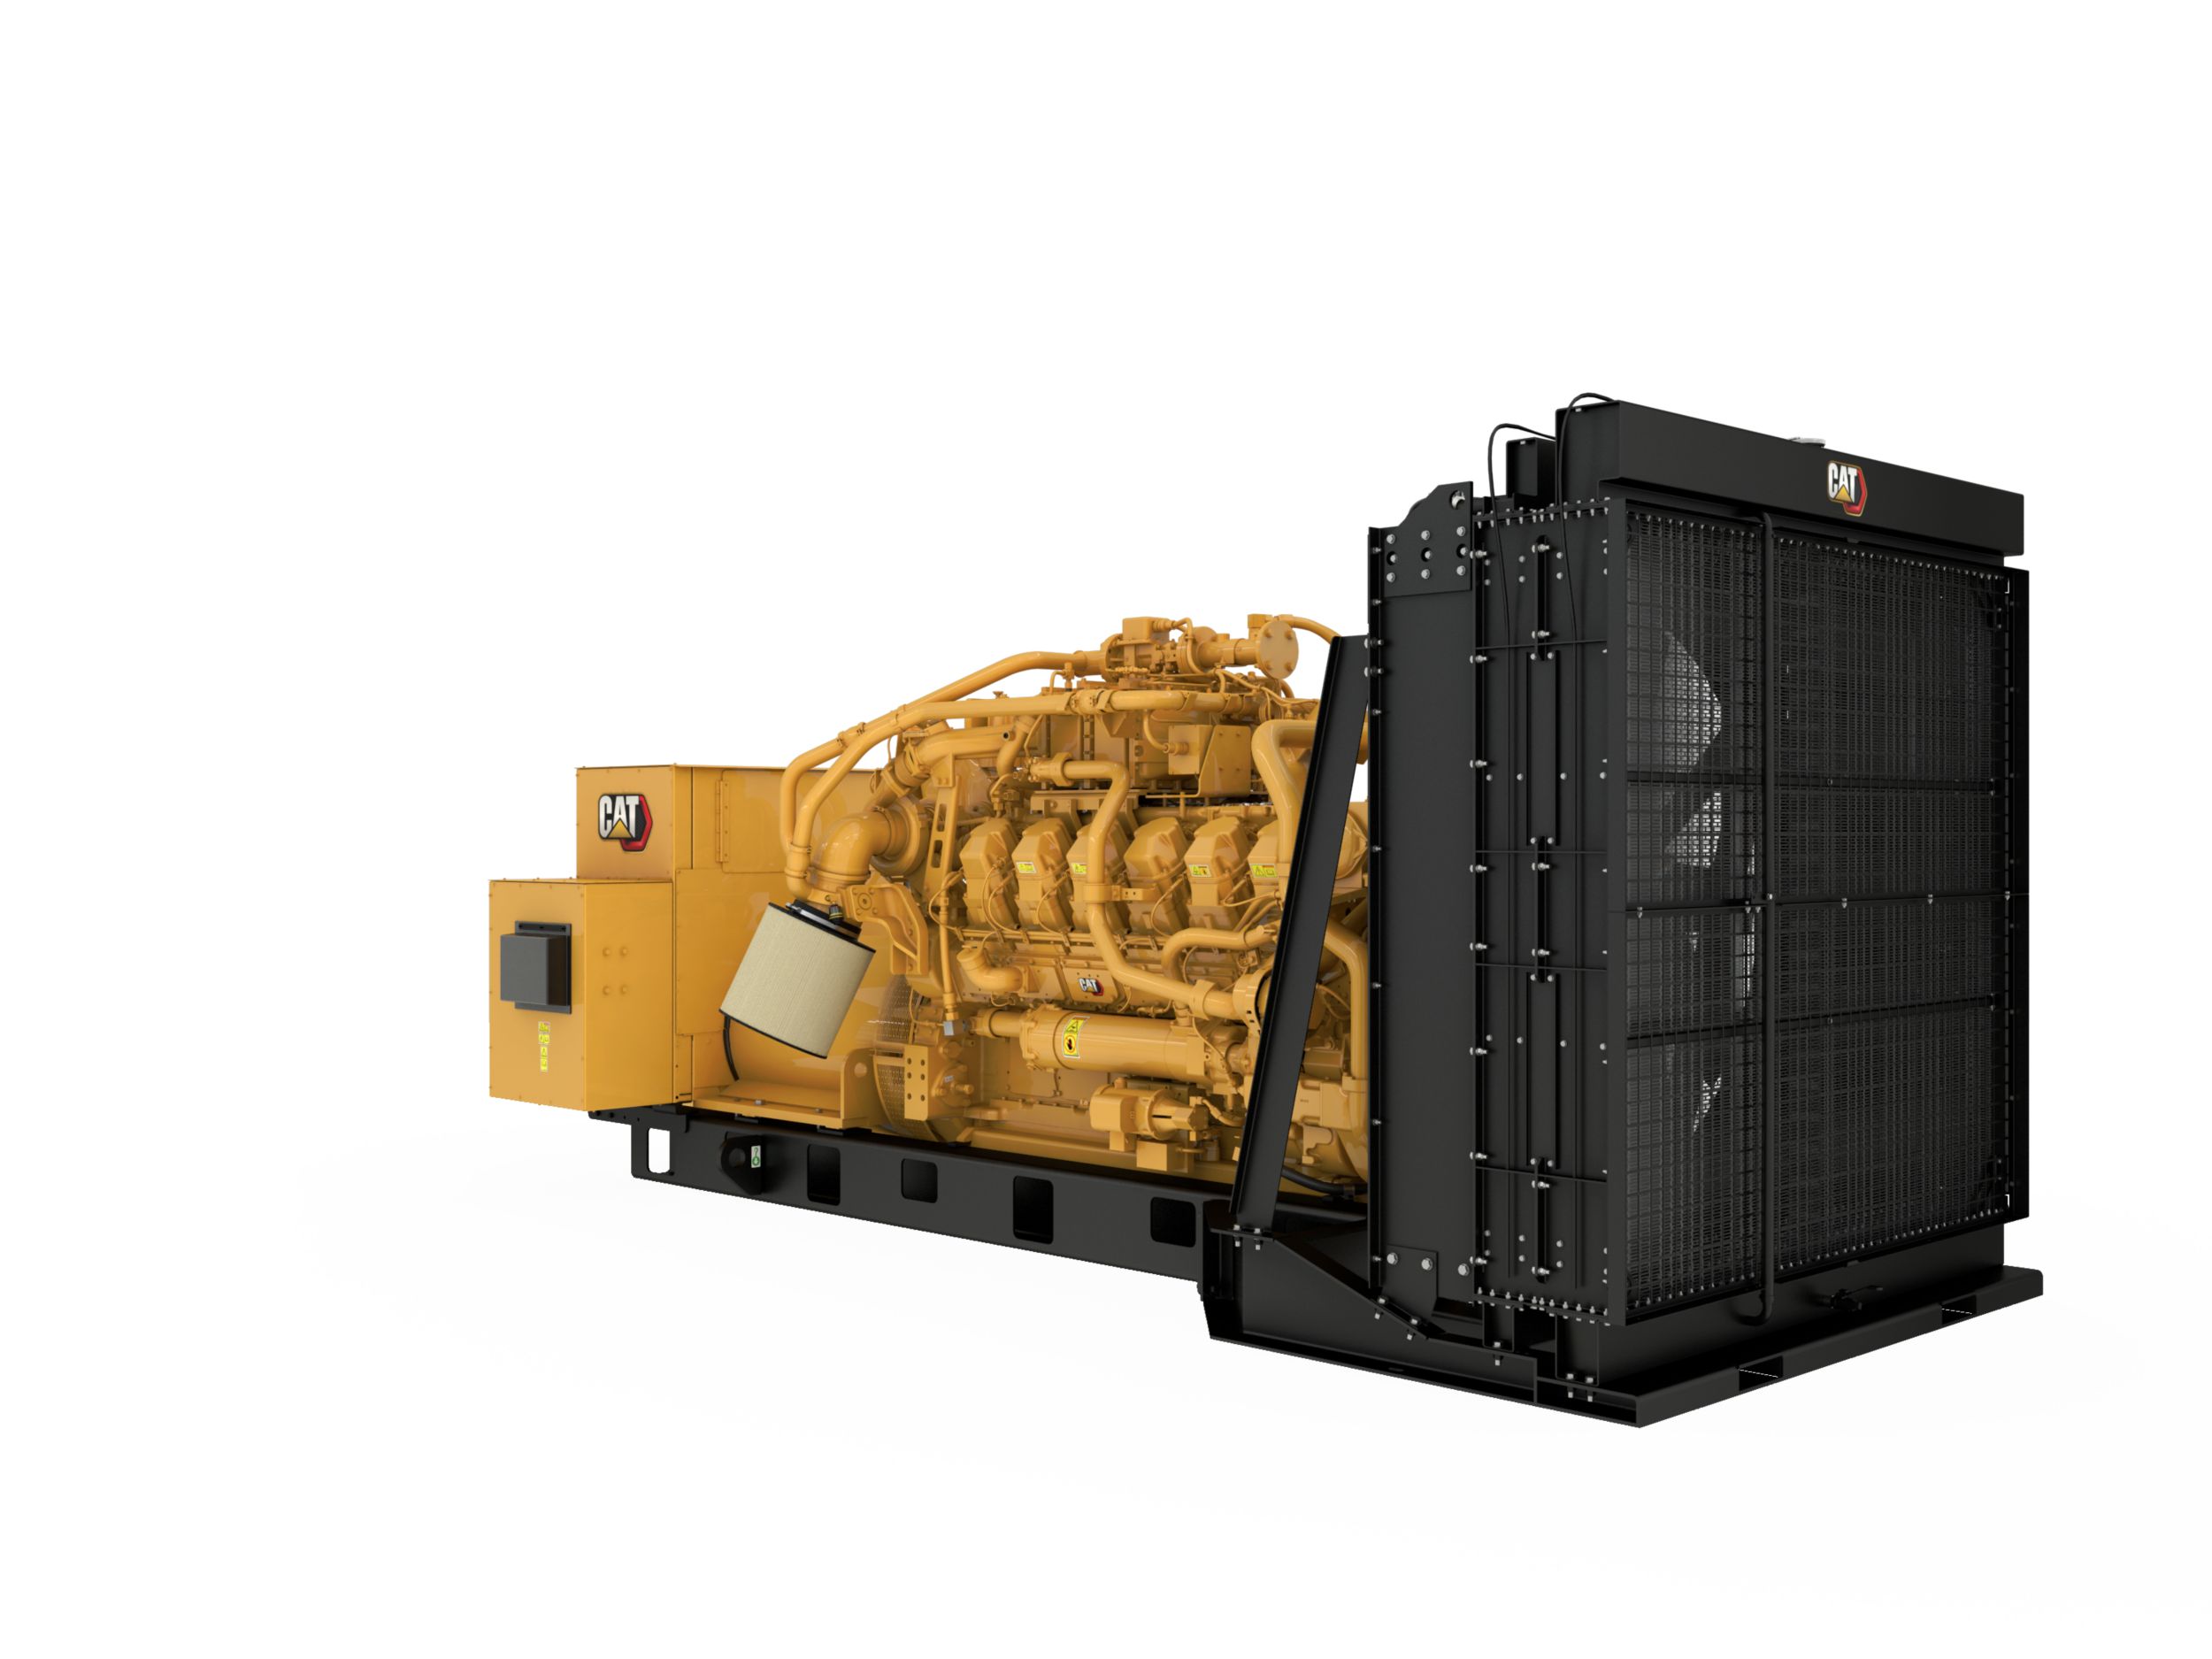 G3512 1000kW Gas Generator Set